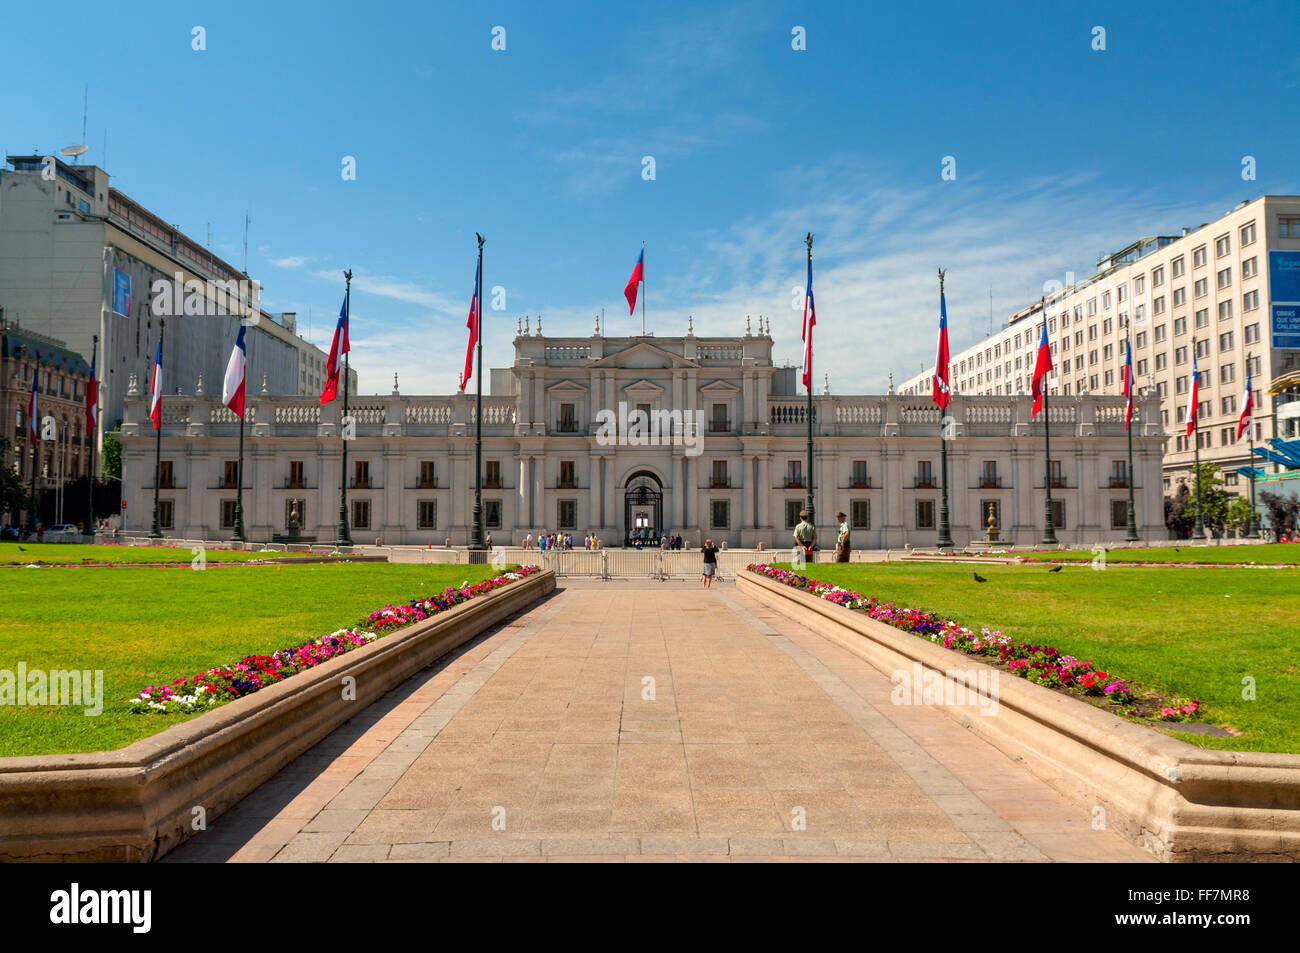 People visit the Palacio de la Moneda in Santiago, Chile. Stock Photo